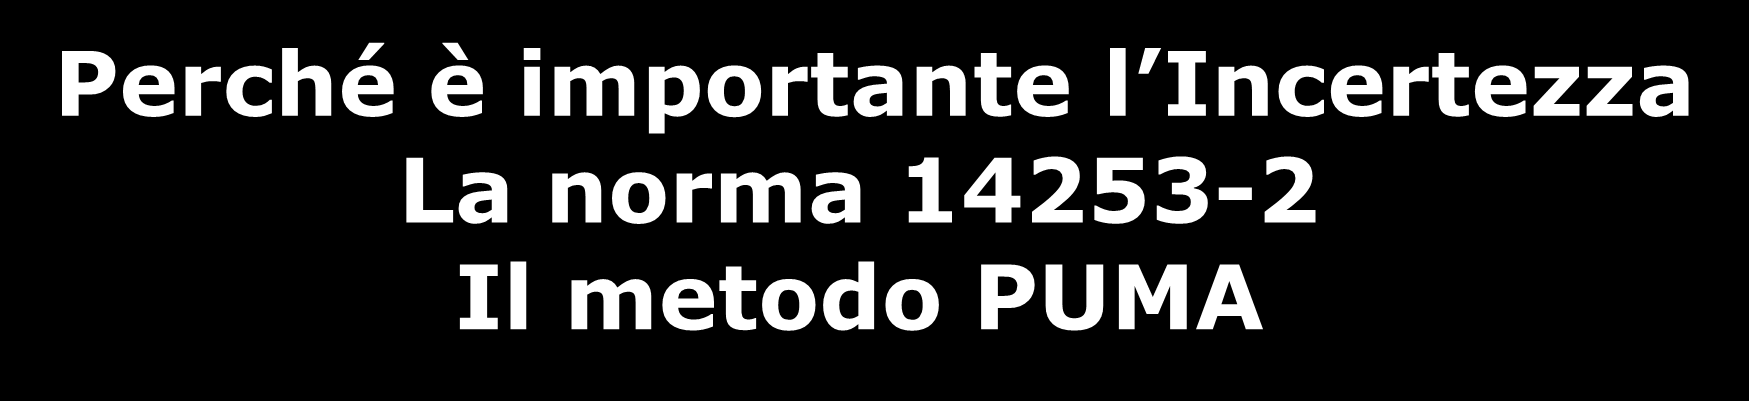 Perché è importante l Incertezza La norma 14253-2 Il metodo PUMA Le slide che seguono sono estratte dal corso pratico sull incertezza organizzato dal CMM Club Italia il 3 e 4 dicembre 2012.